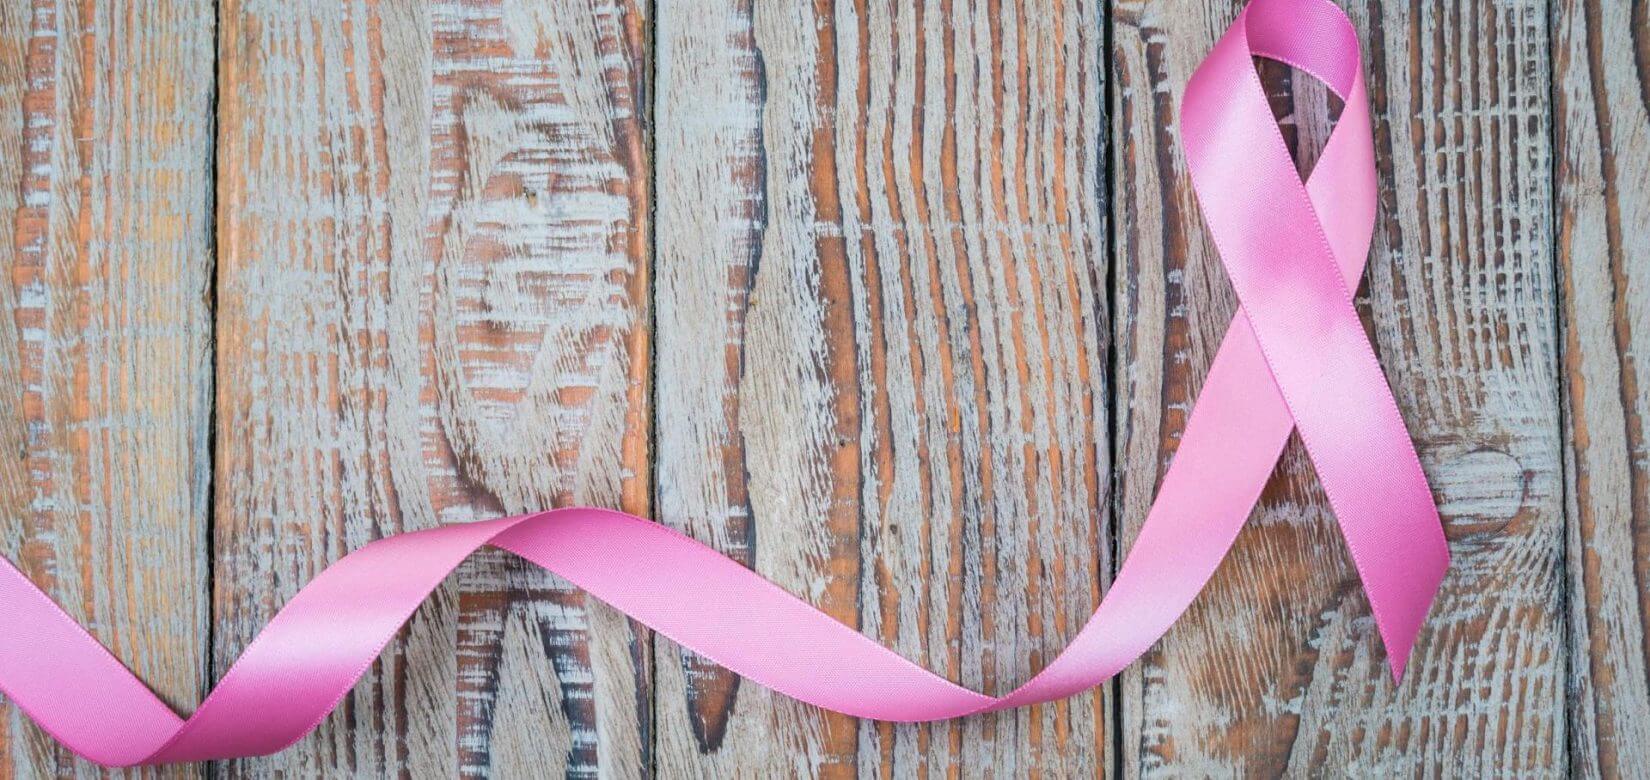 Ο καρκίνος του μαστού θέλει πρόληψη με στρατηγική